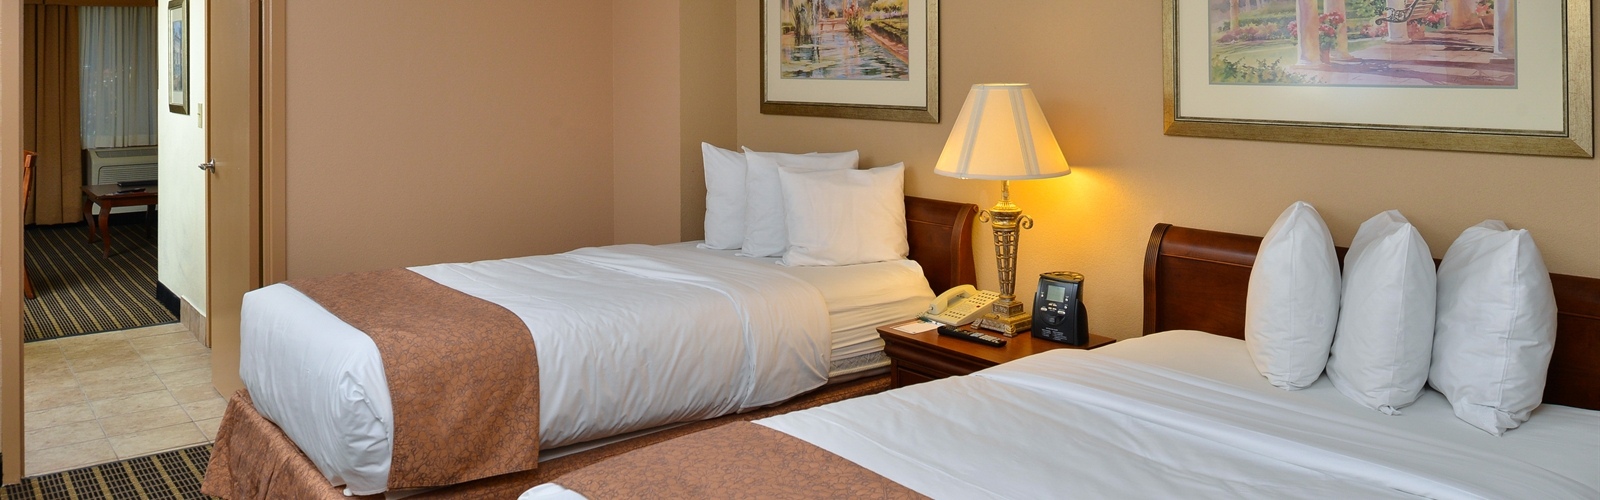 2 Bedroom Suites In Orlando Near Universal Studios | Sobkitchen